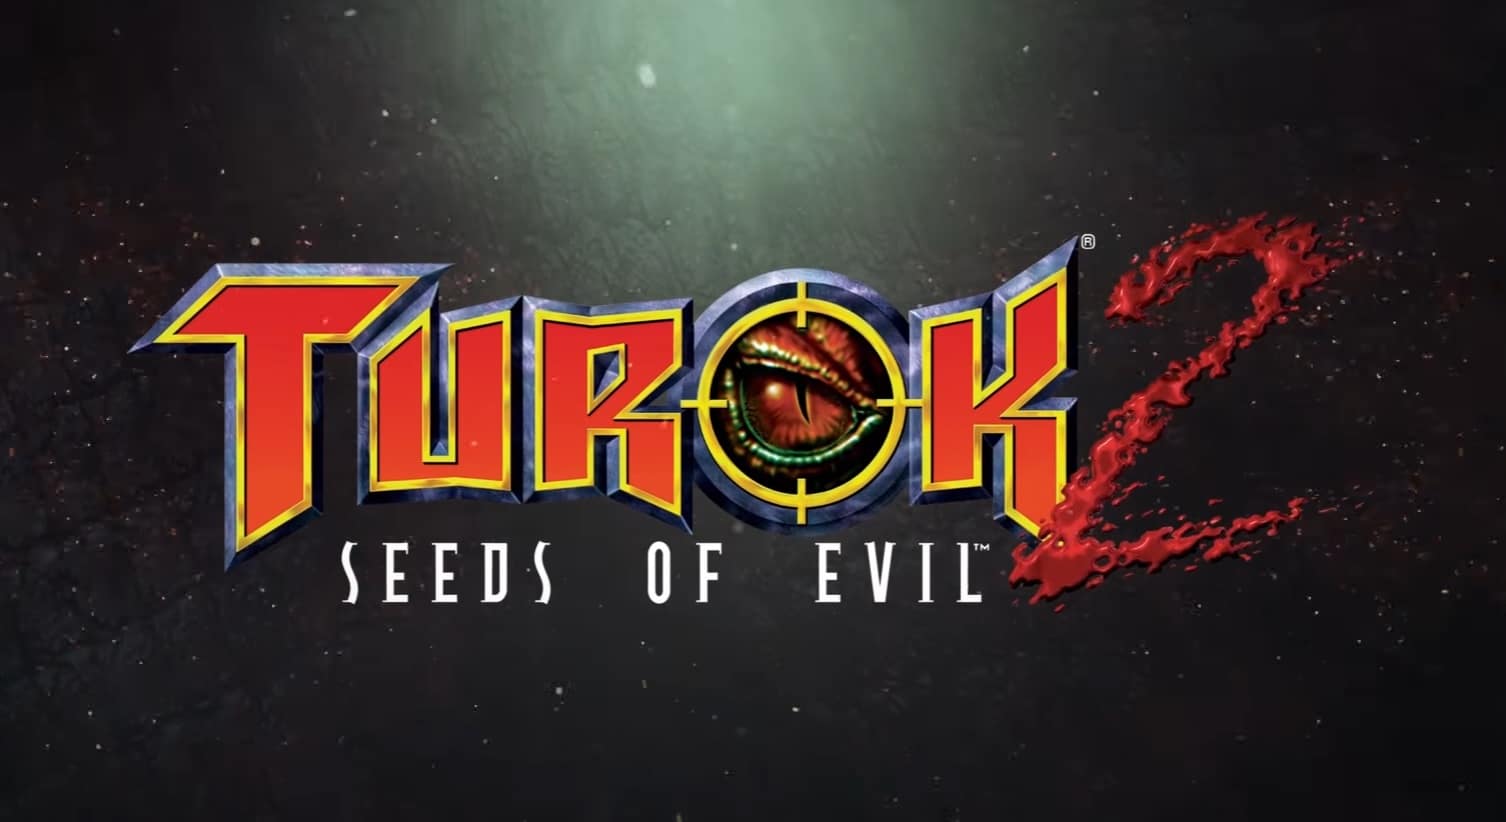 Turok 2: Seeds of Evil ภาครีมาสเตอร์นักล่าไดโนเสาร์ เตรียมขายวันที่ 17 มี.ค.